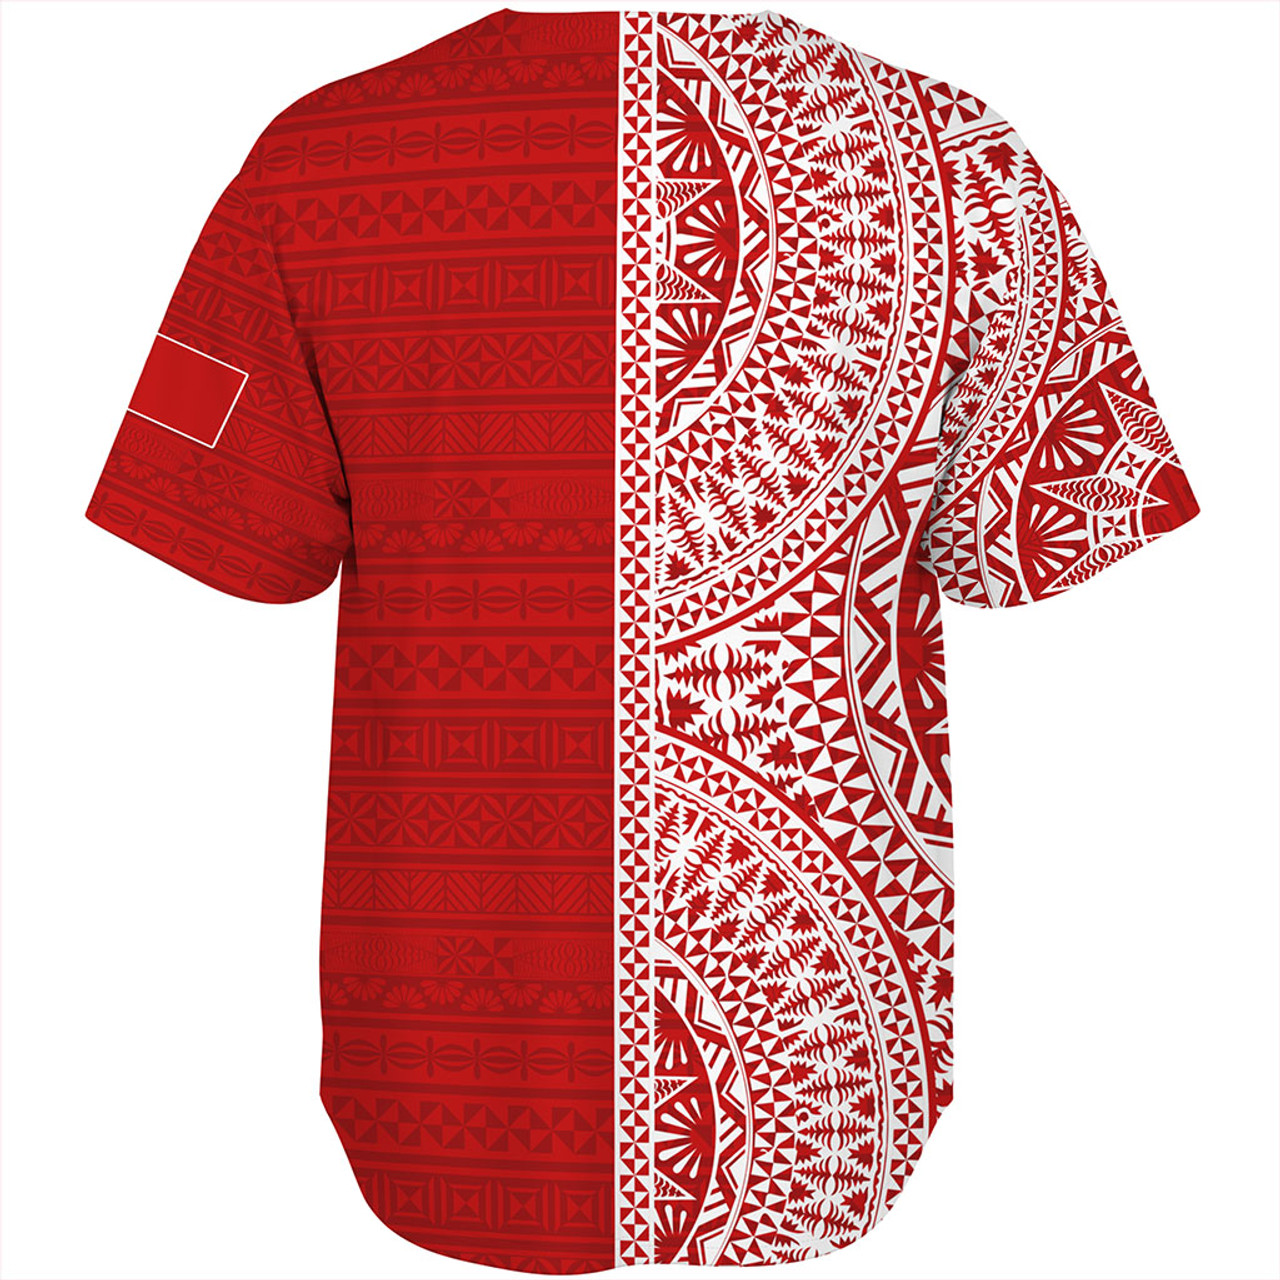 Tonga Baseball Shirt Ngatu Traditional Half Concept